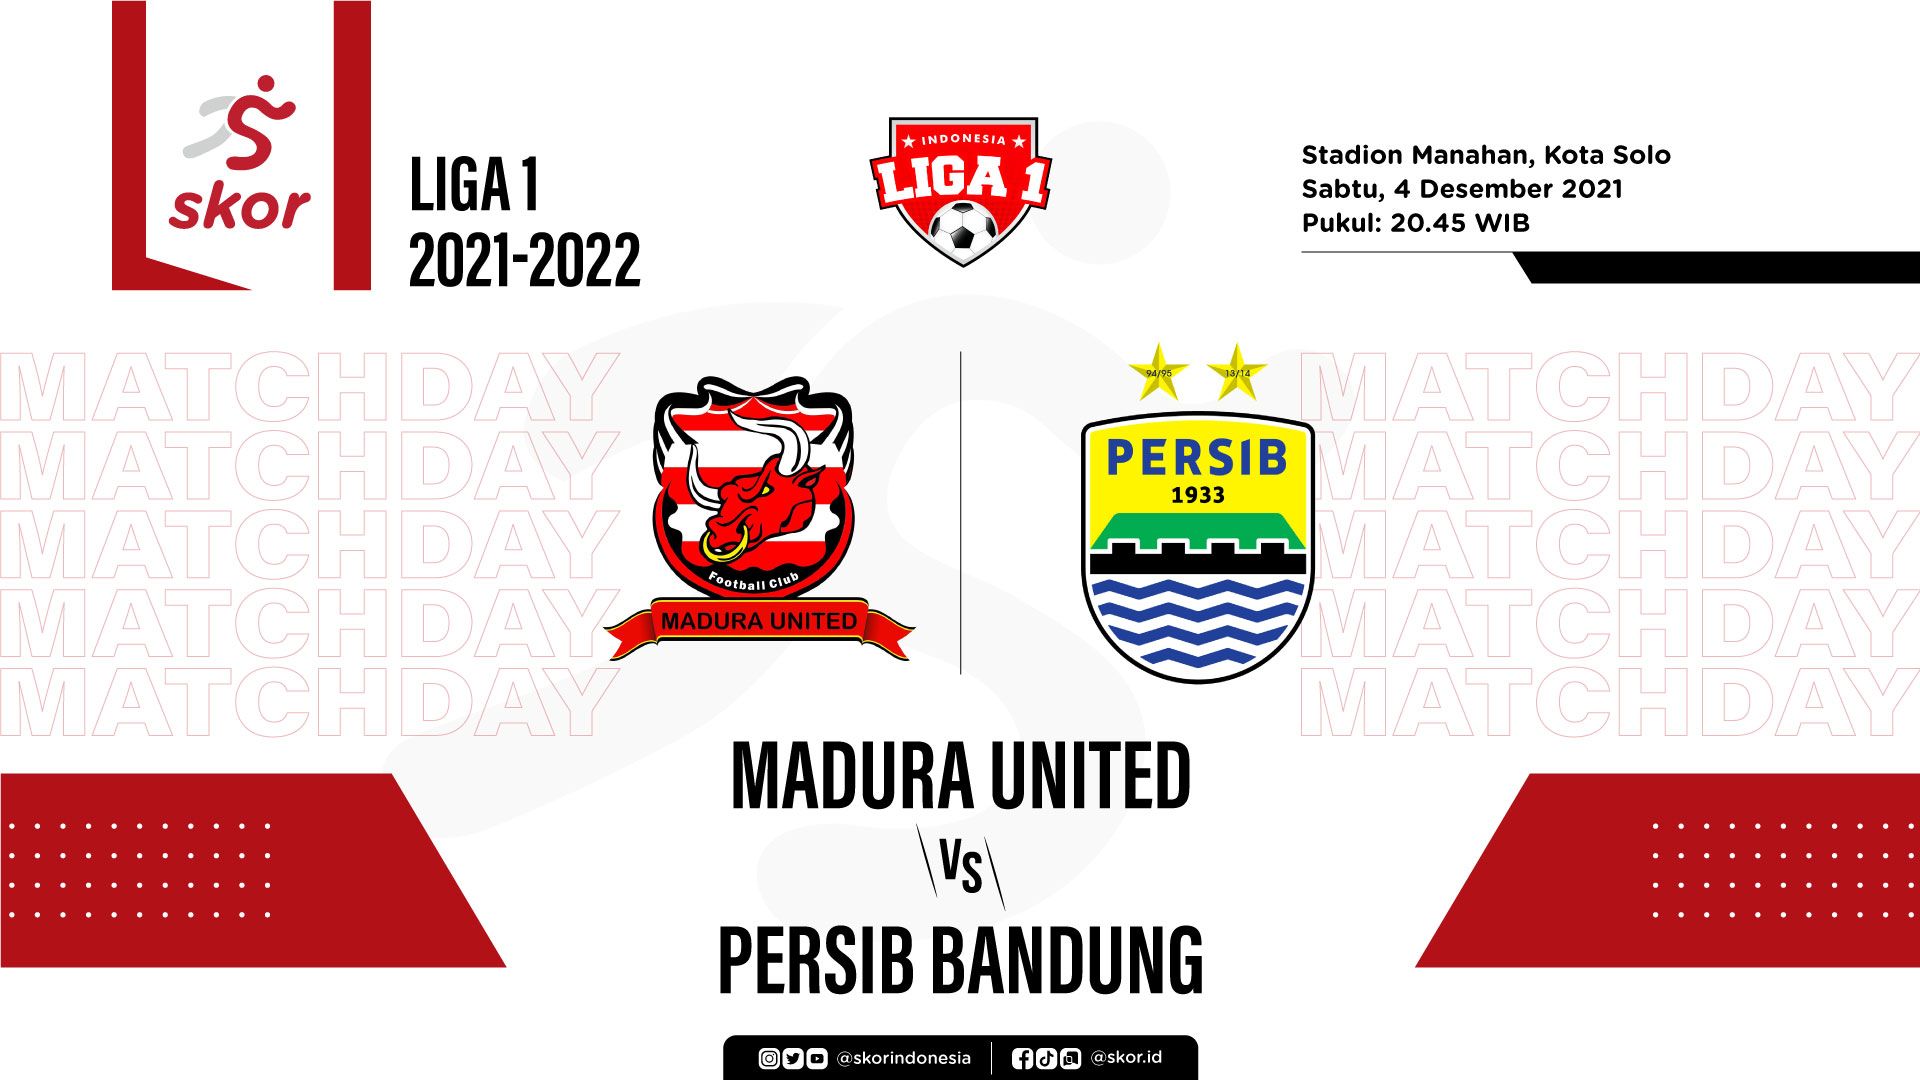 Bandung vs united persib madura Persib Bandung